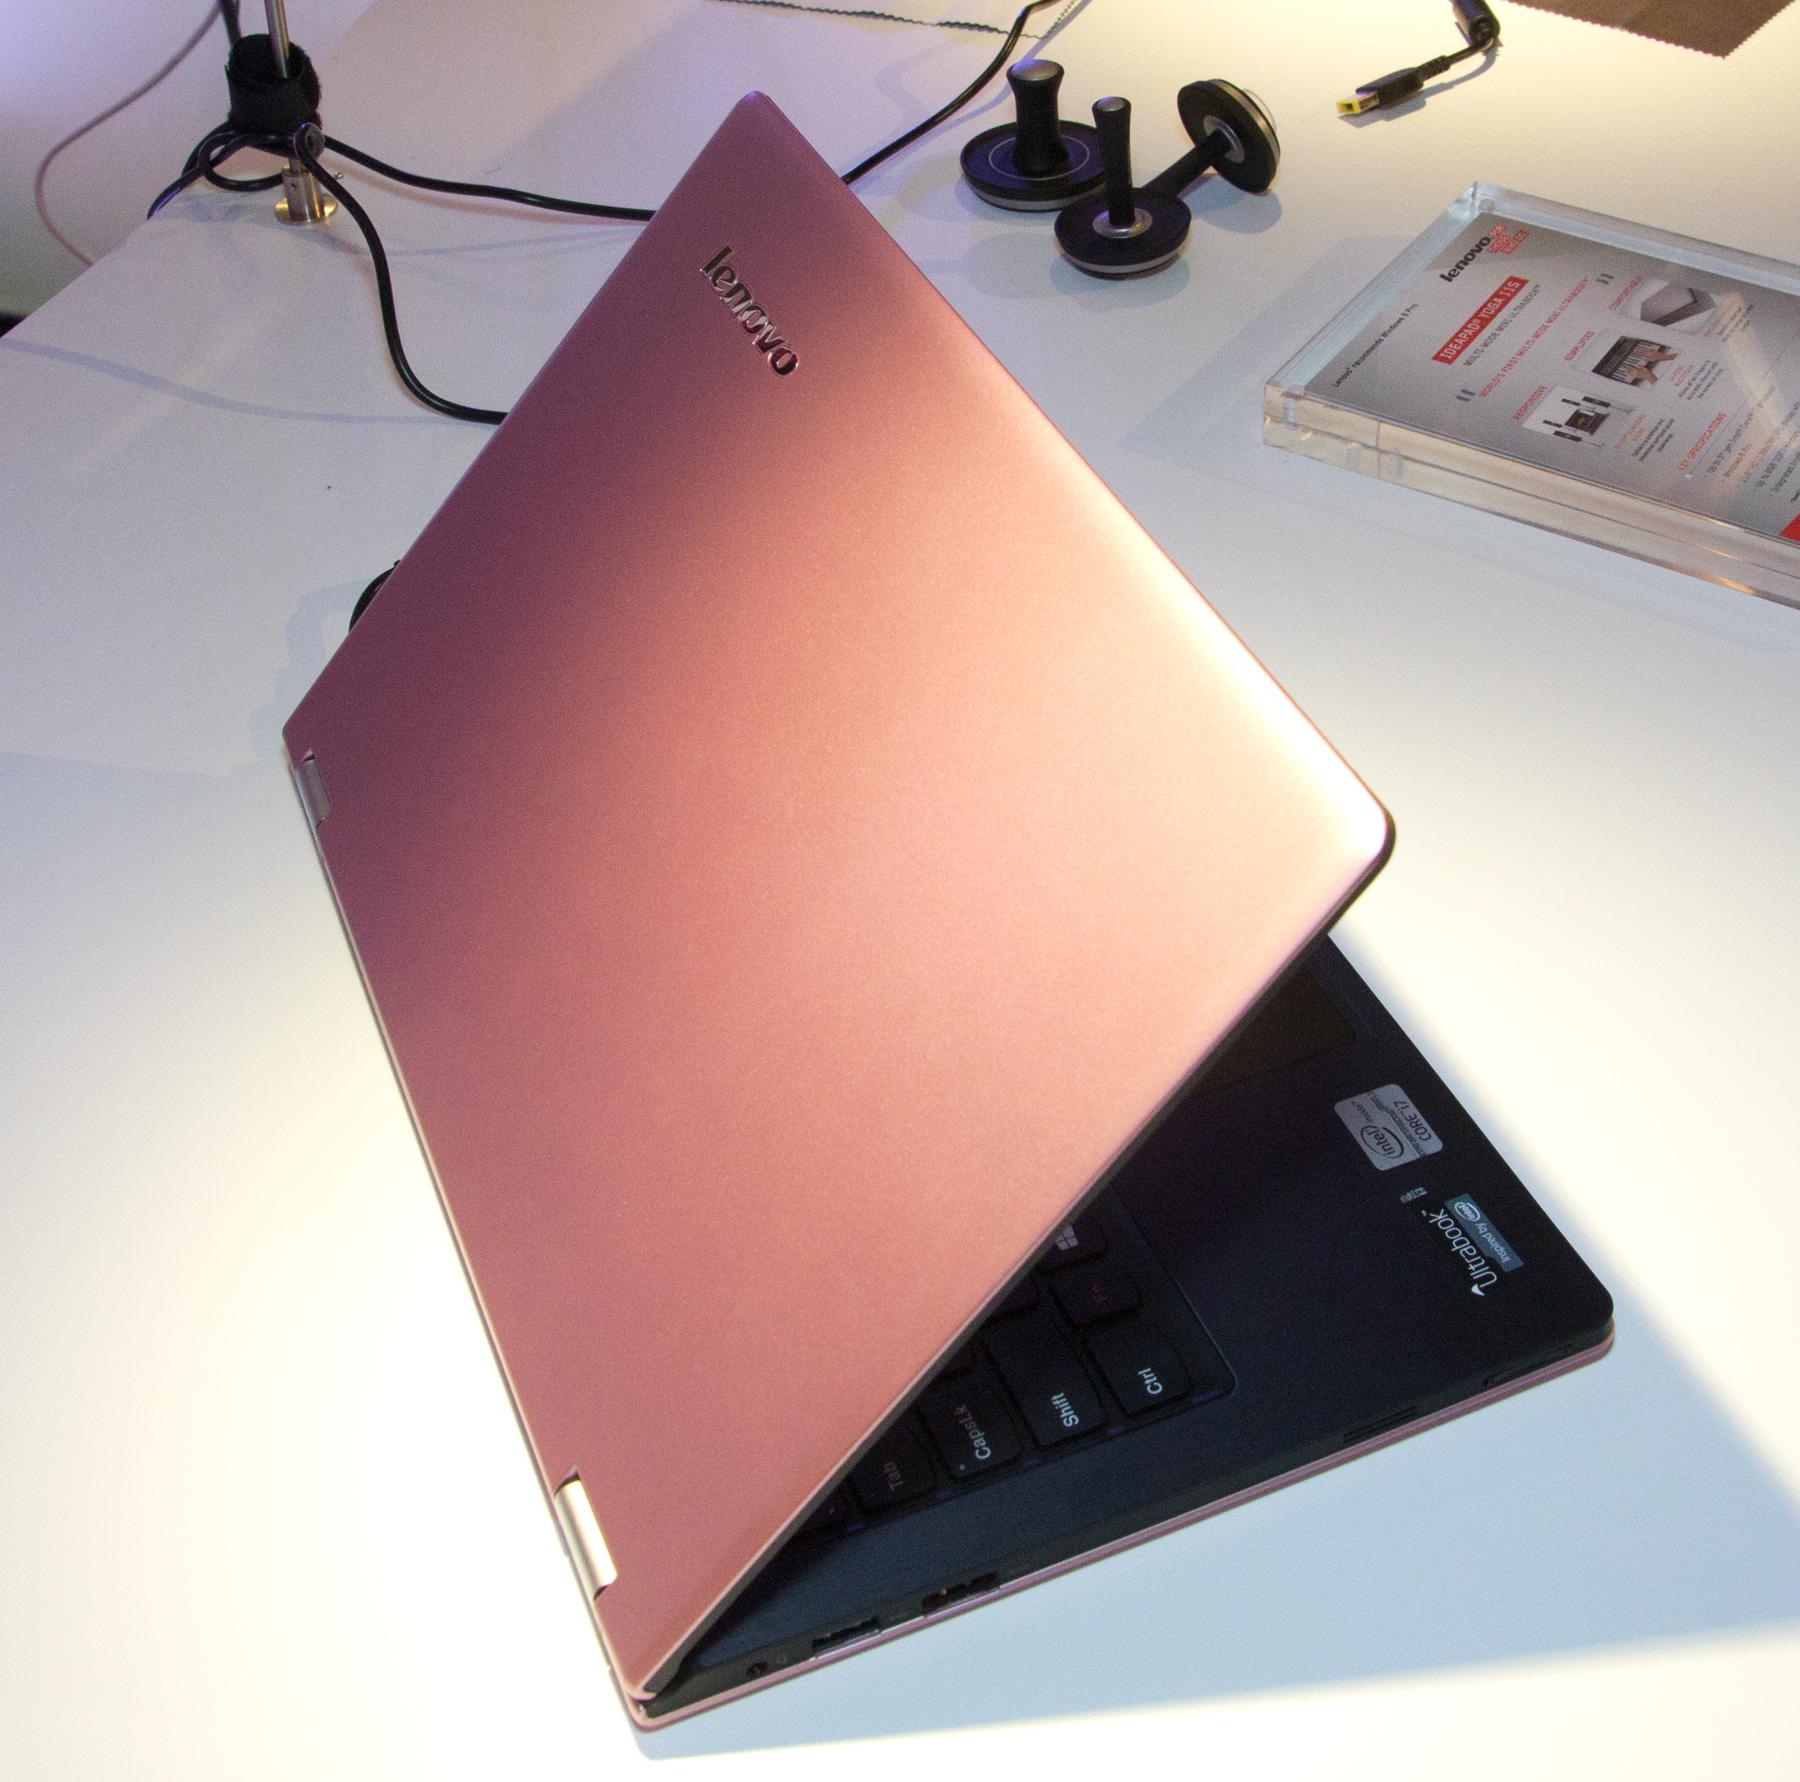 Enda litt mer Lenovo-nytt. Yoga 11-tommer, i begrenset opplag med rosa fargeFoto: Rolf B. Wegner, Hardware.no